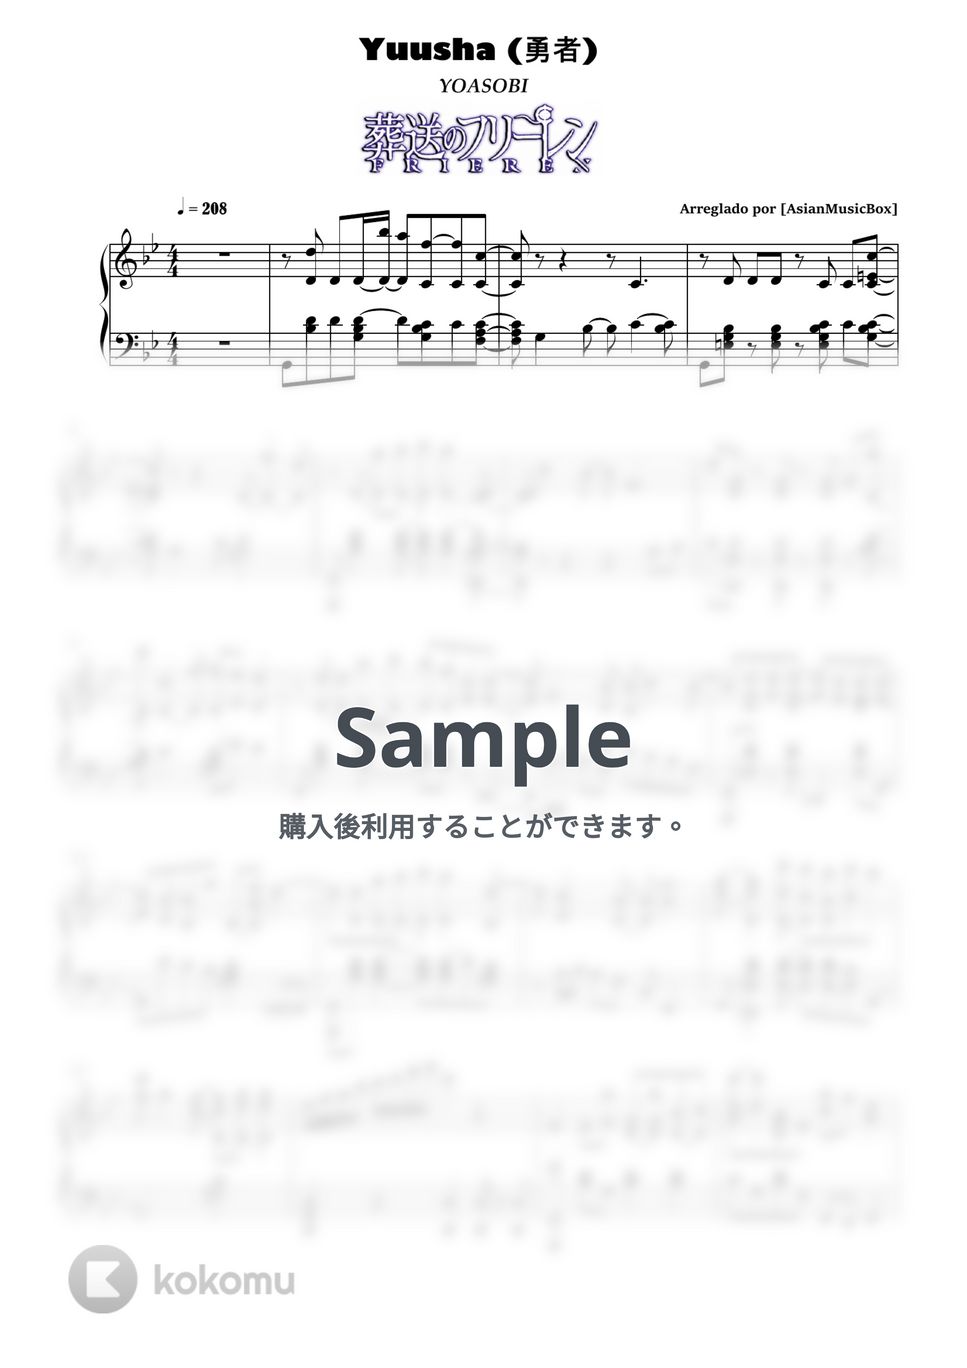 ヨアソビ - 勇者 (楽譜、MIDI、ドラム & WAVファイル) by AsianMusicBox